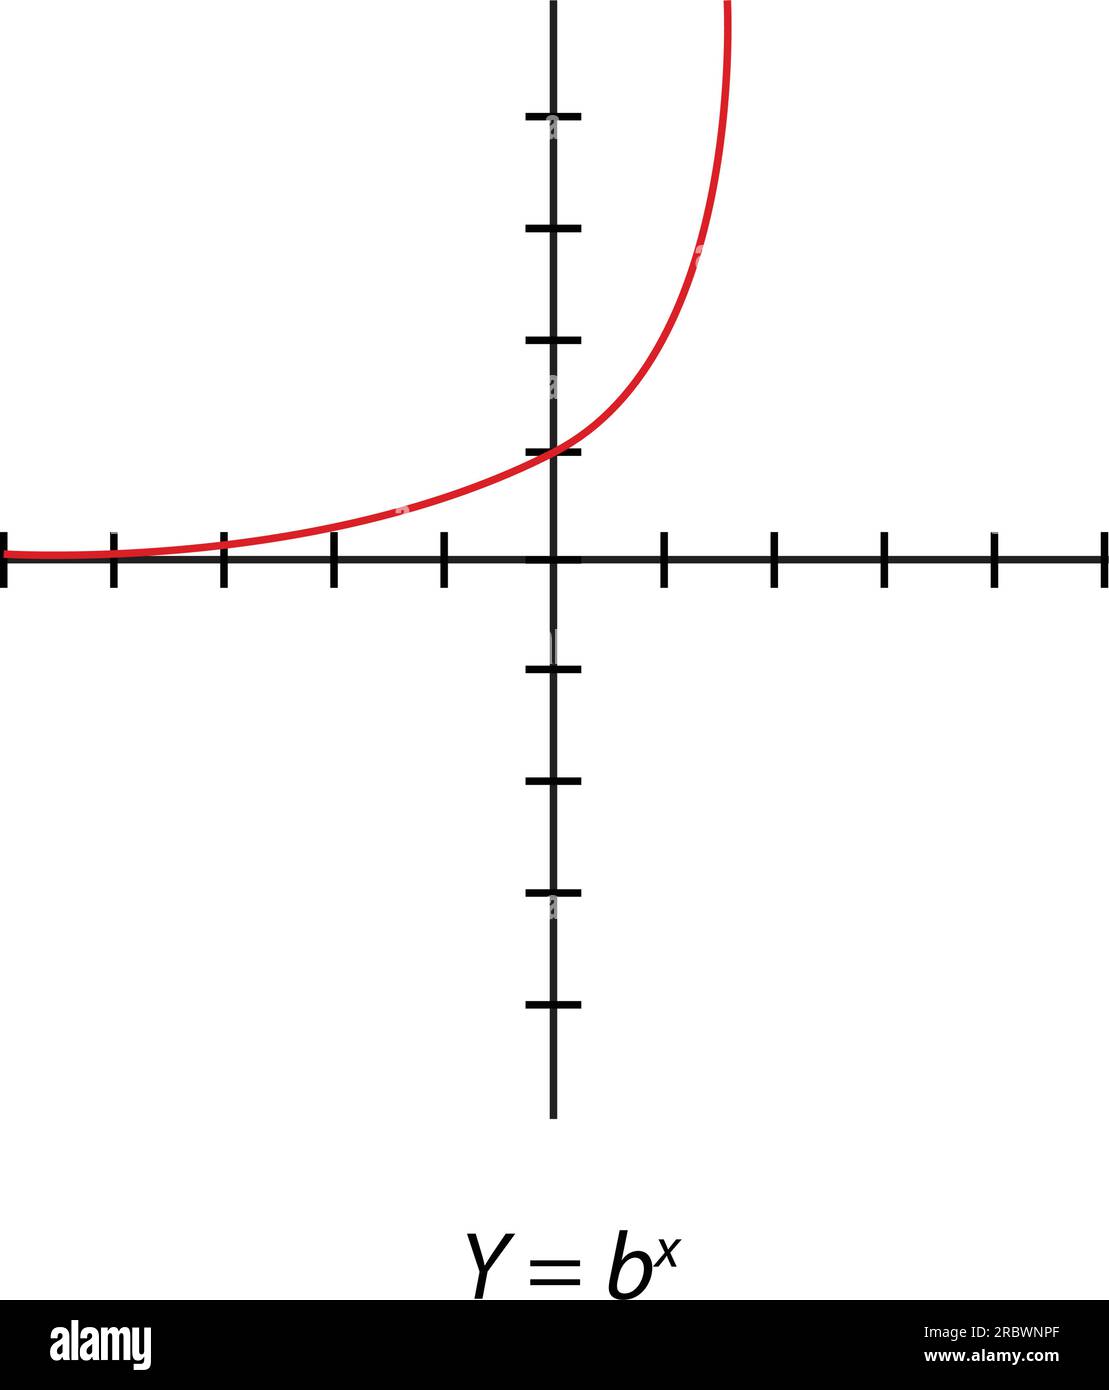 Y = grafico quadrato bx. Piano delle coordinate ortogonali rettangolari con gli assi X e Y. illustrazione vettoriale isolata su sfondo bianco. Illustrazione Vettoriale